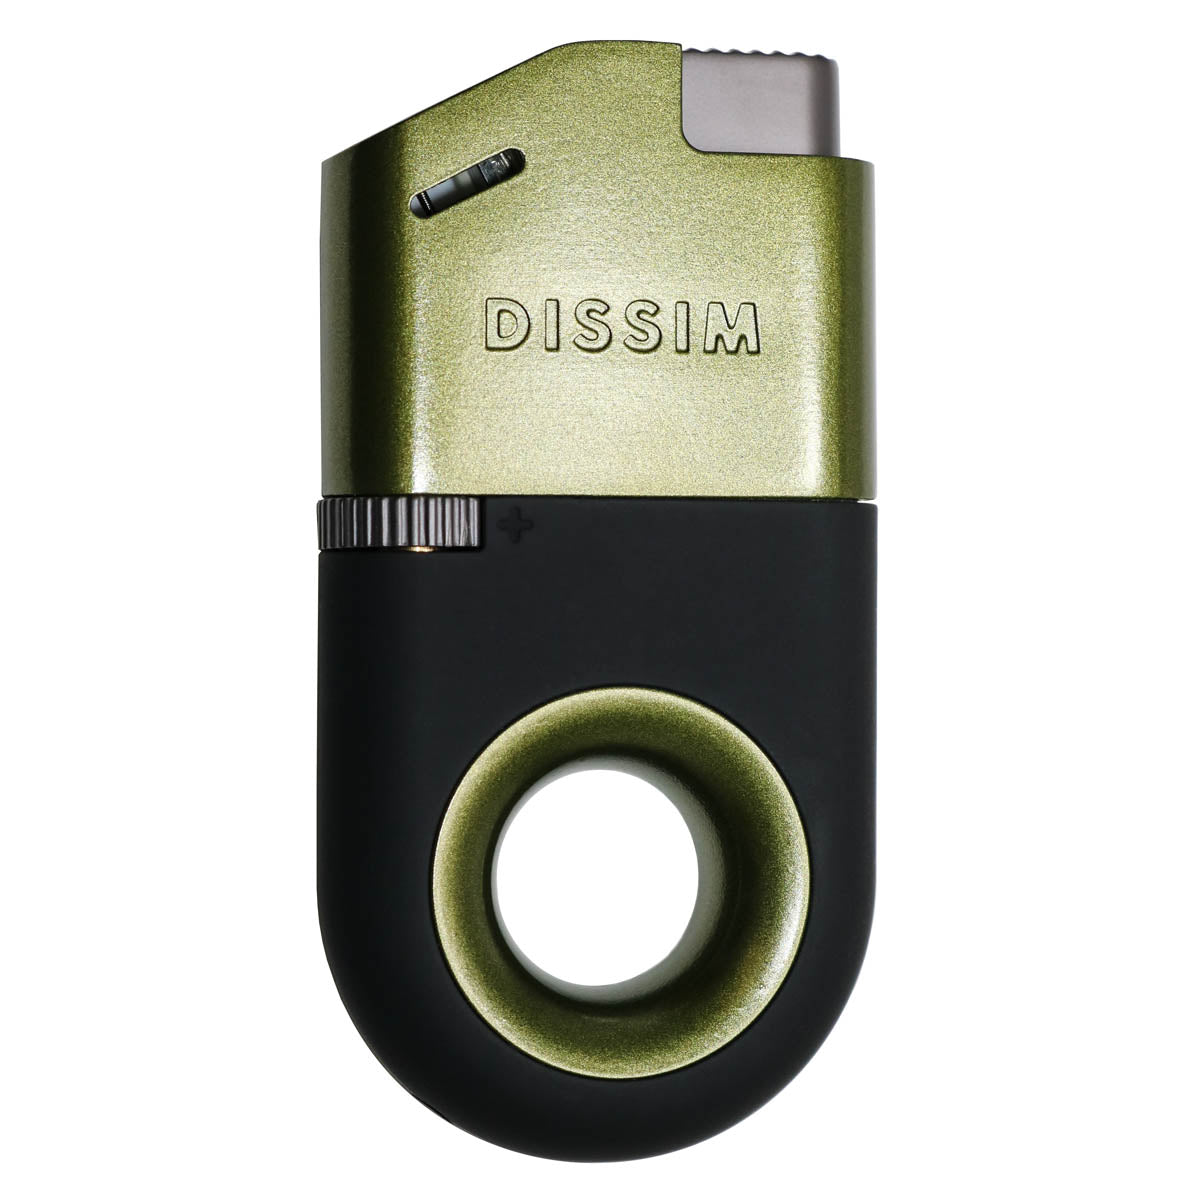 Dissim Inverted Butane Lighter